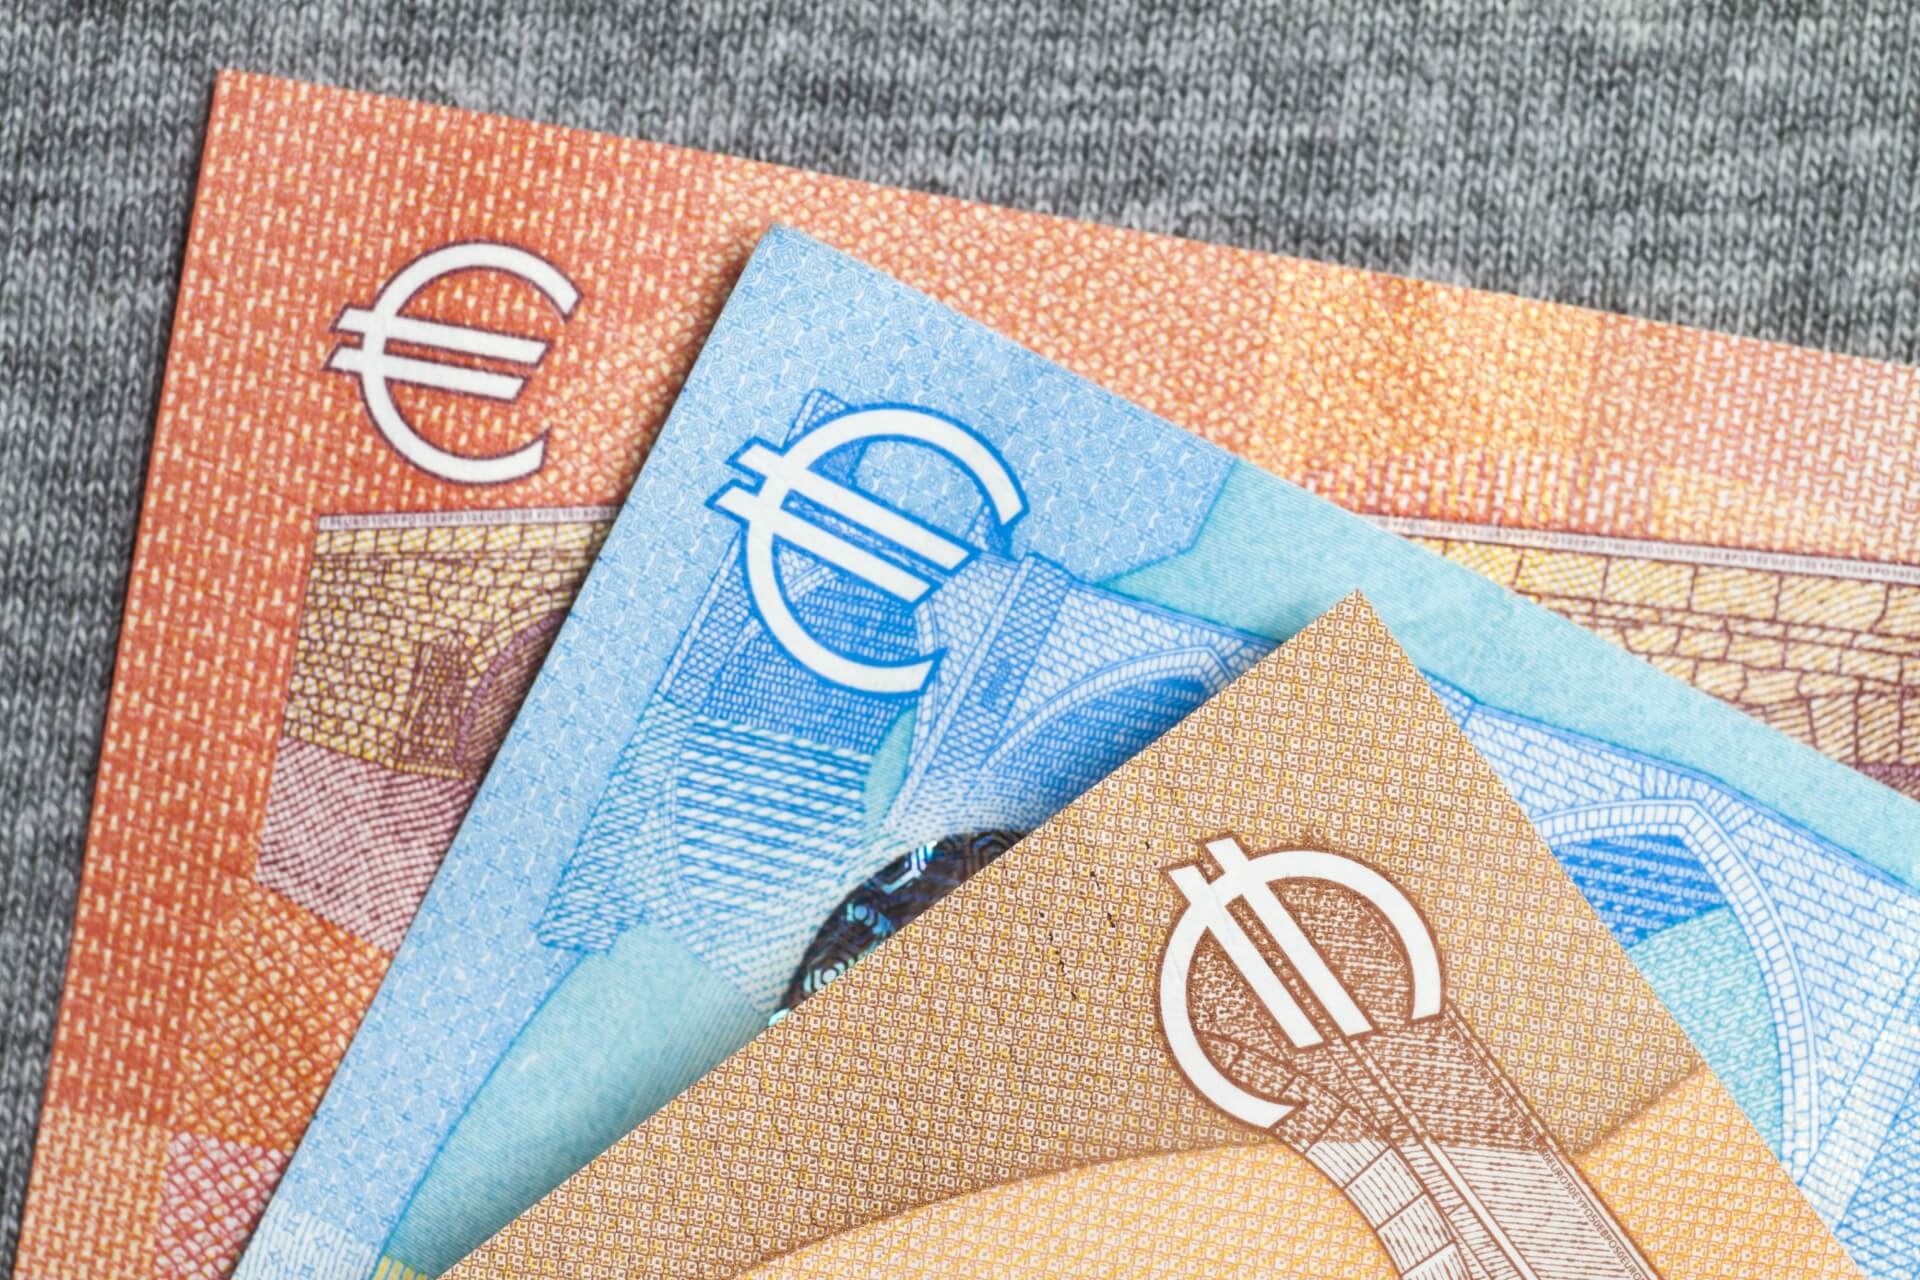 Wprowadzenie euro nie prowadzi do „drożyzny” i wysokiej inflacji. Komunikat